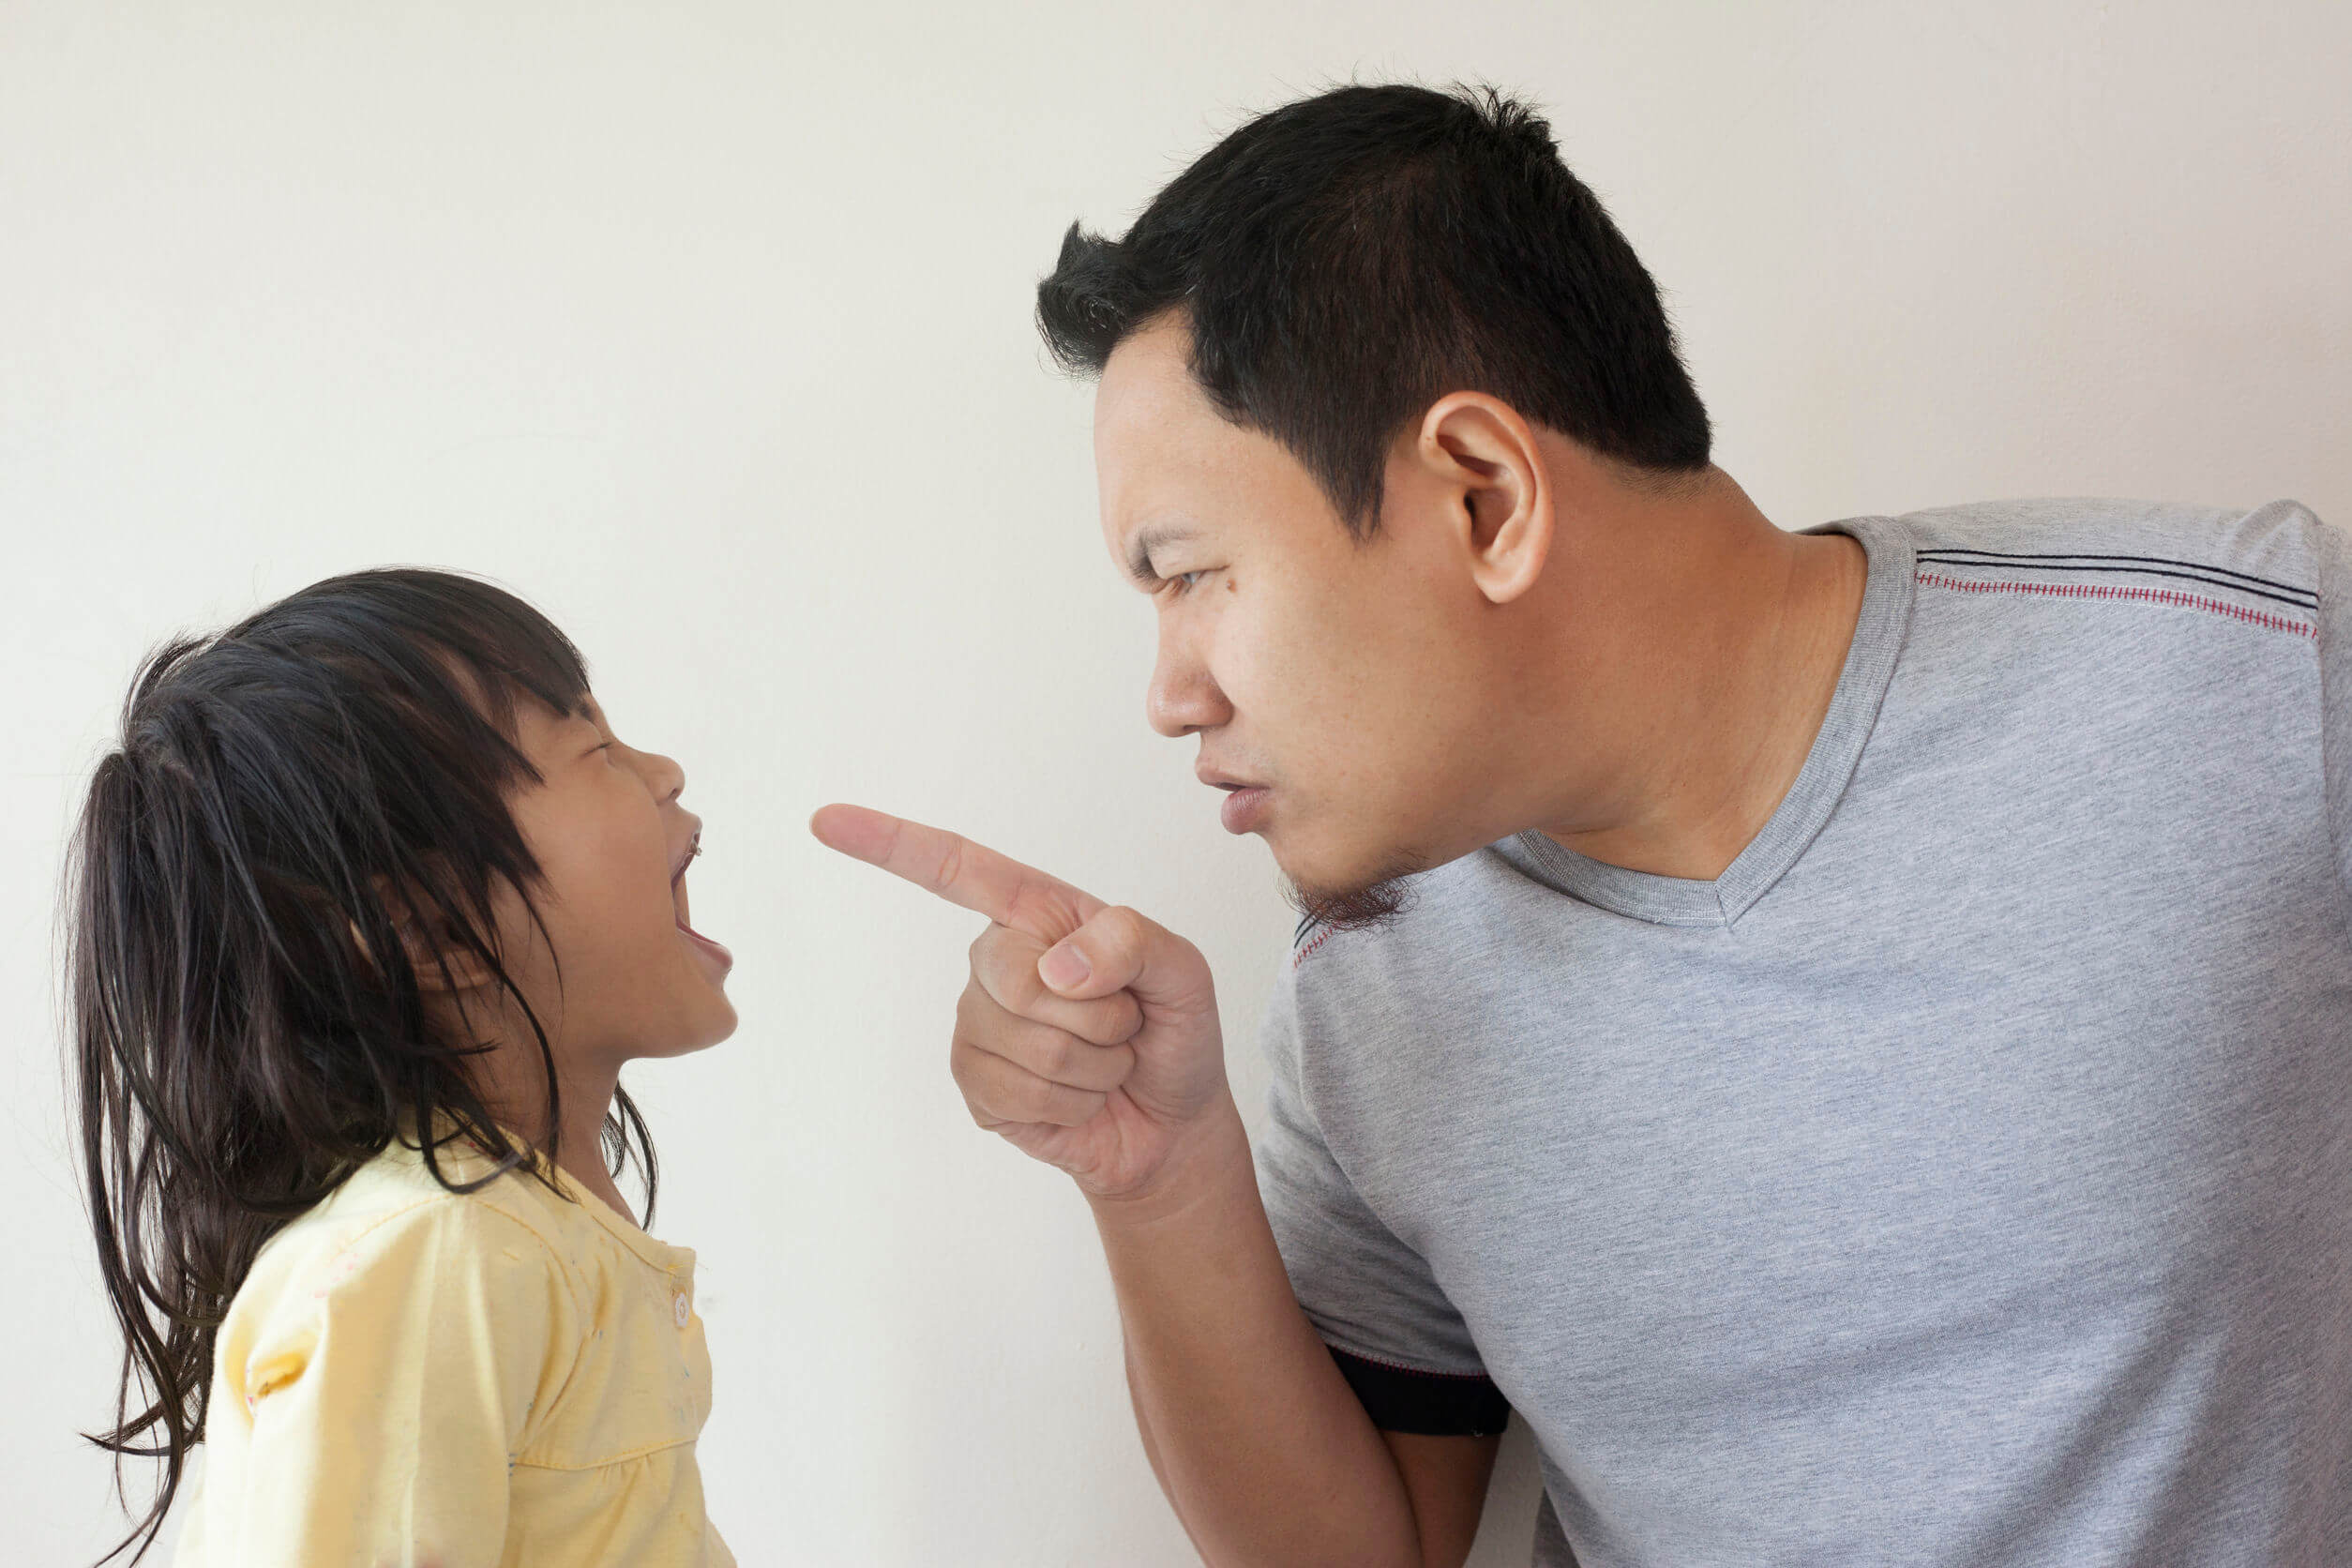 Padre regañando a su hija por sus malas contestaciones.